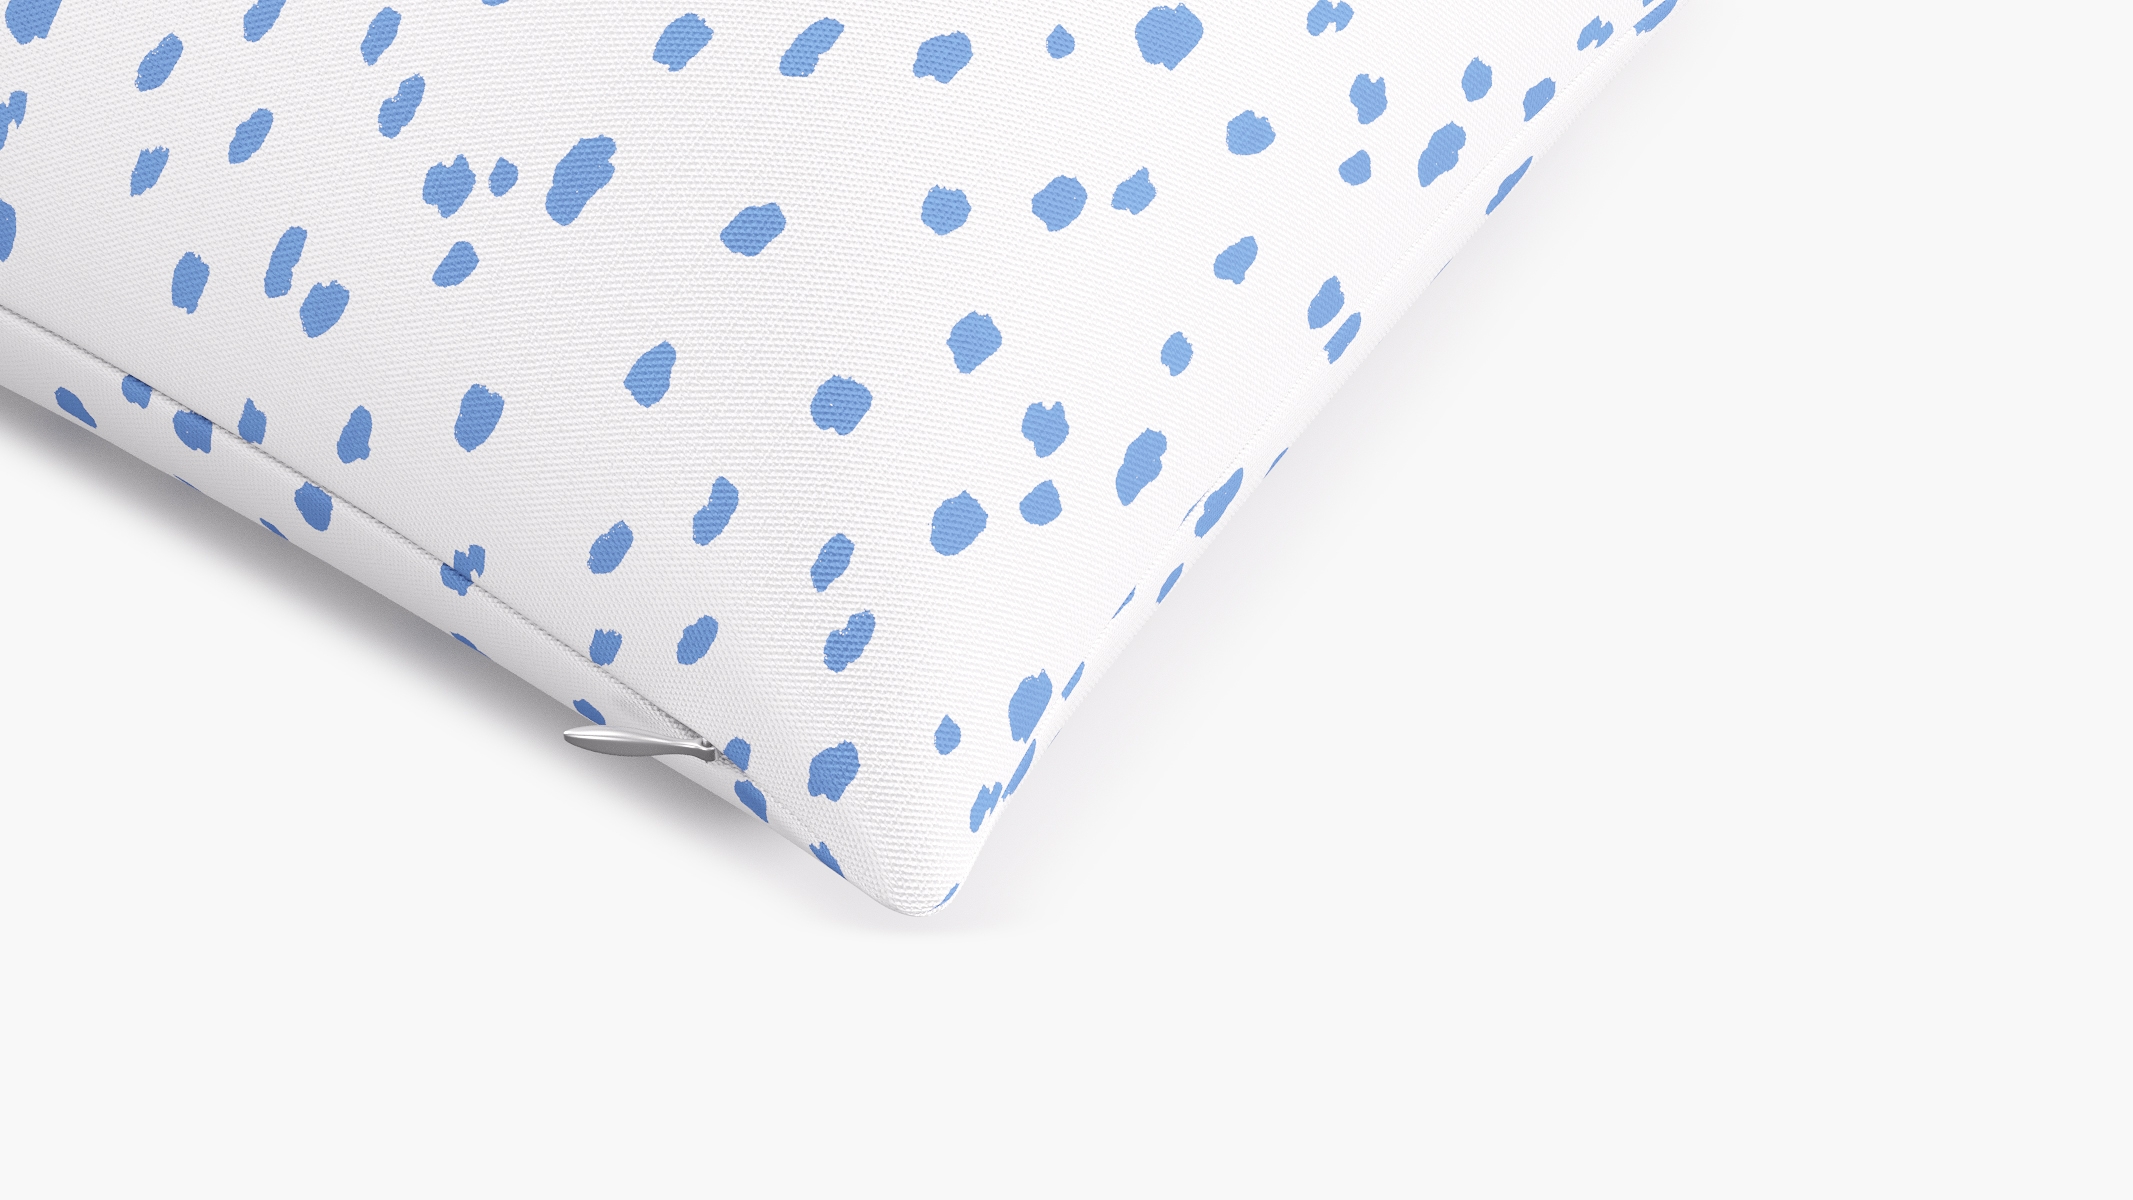 Blue Dalmatian Throw Pillow - 14" x 20" - Image 1